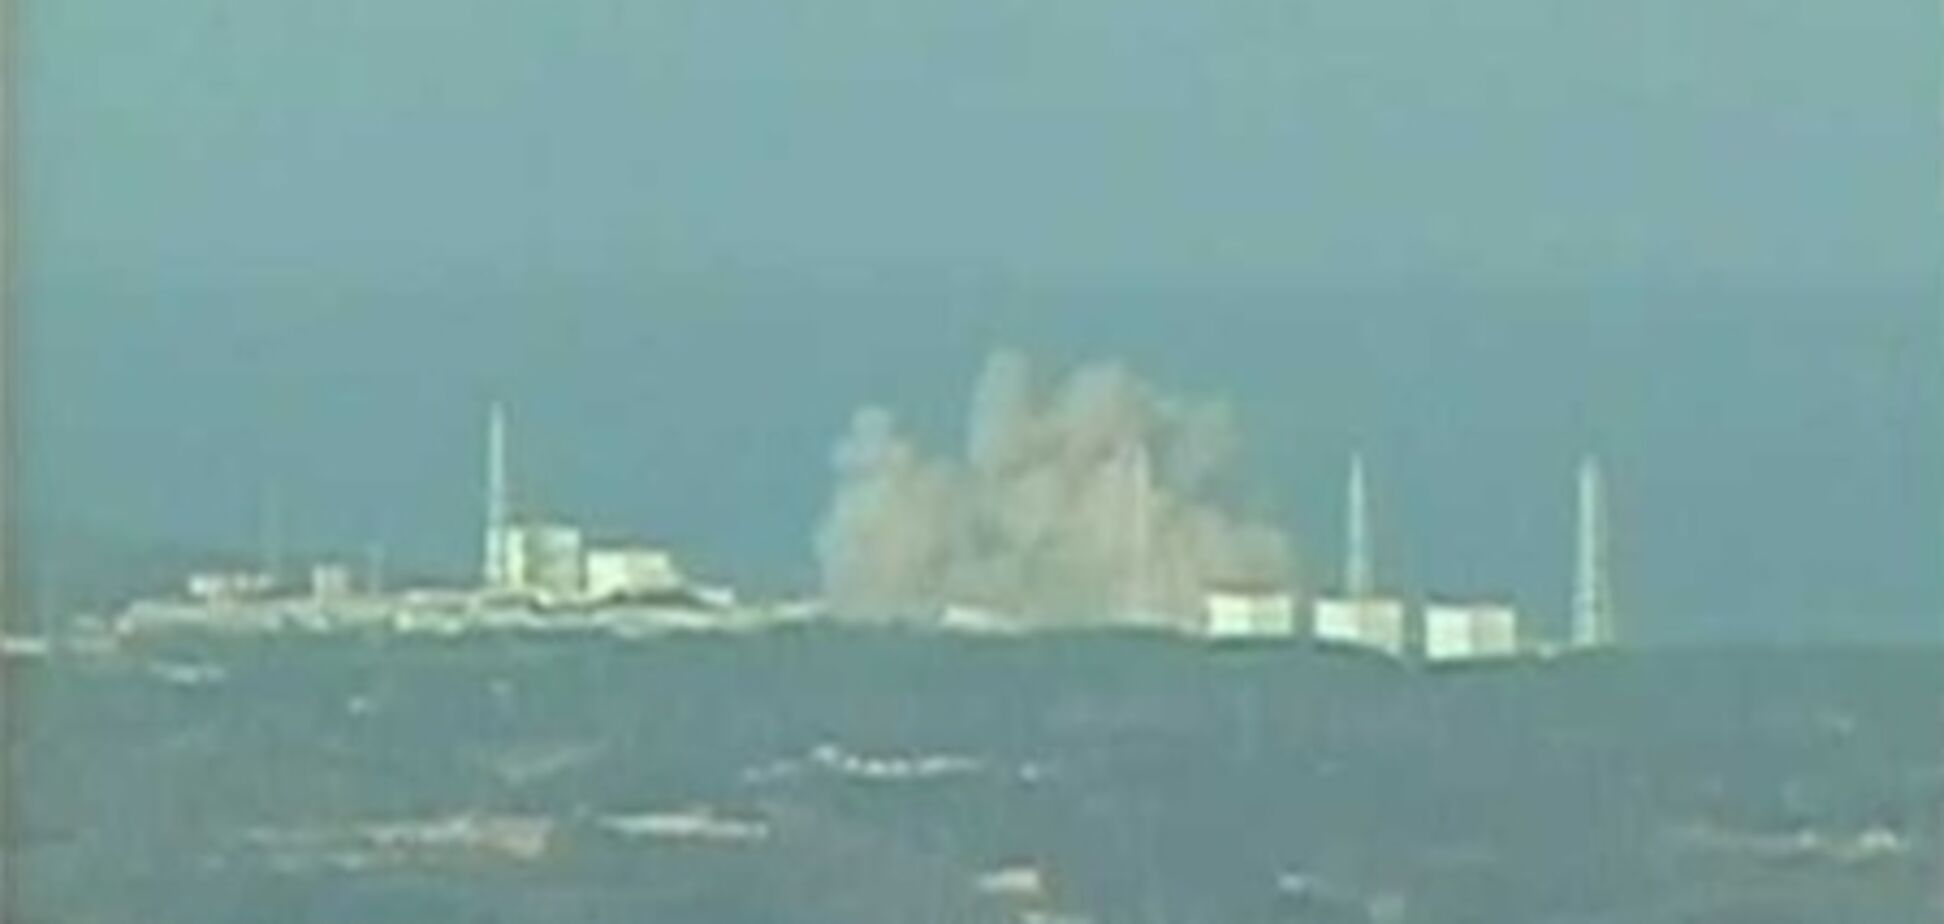 Система охлаждения второго реактора японской АЭС 'Фукусима-1' остановилась